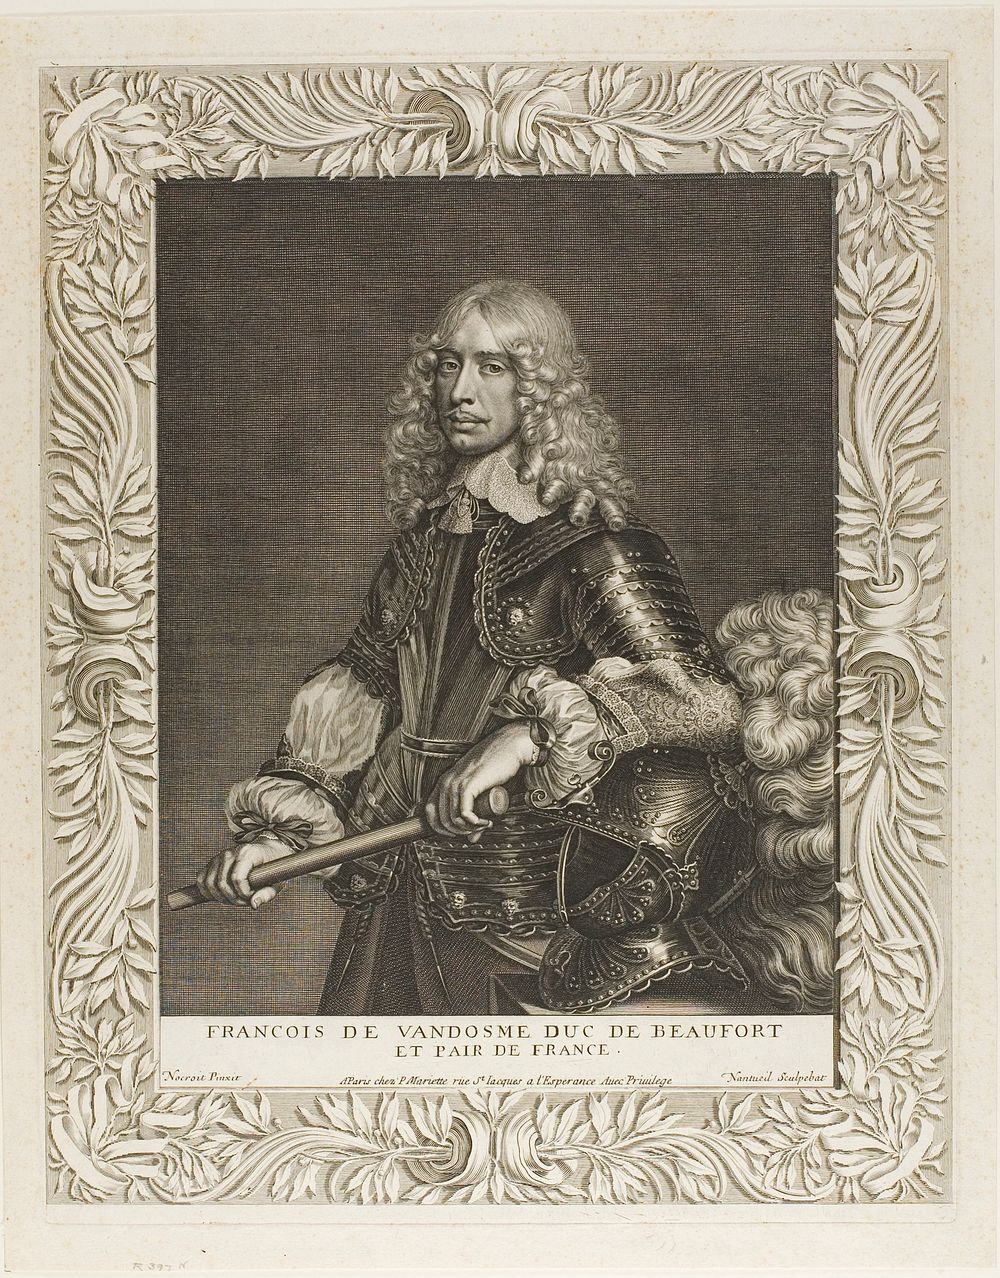 François de Vendôme, Duc de Beaufort by Robert Nanteuil